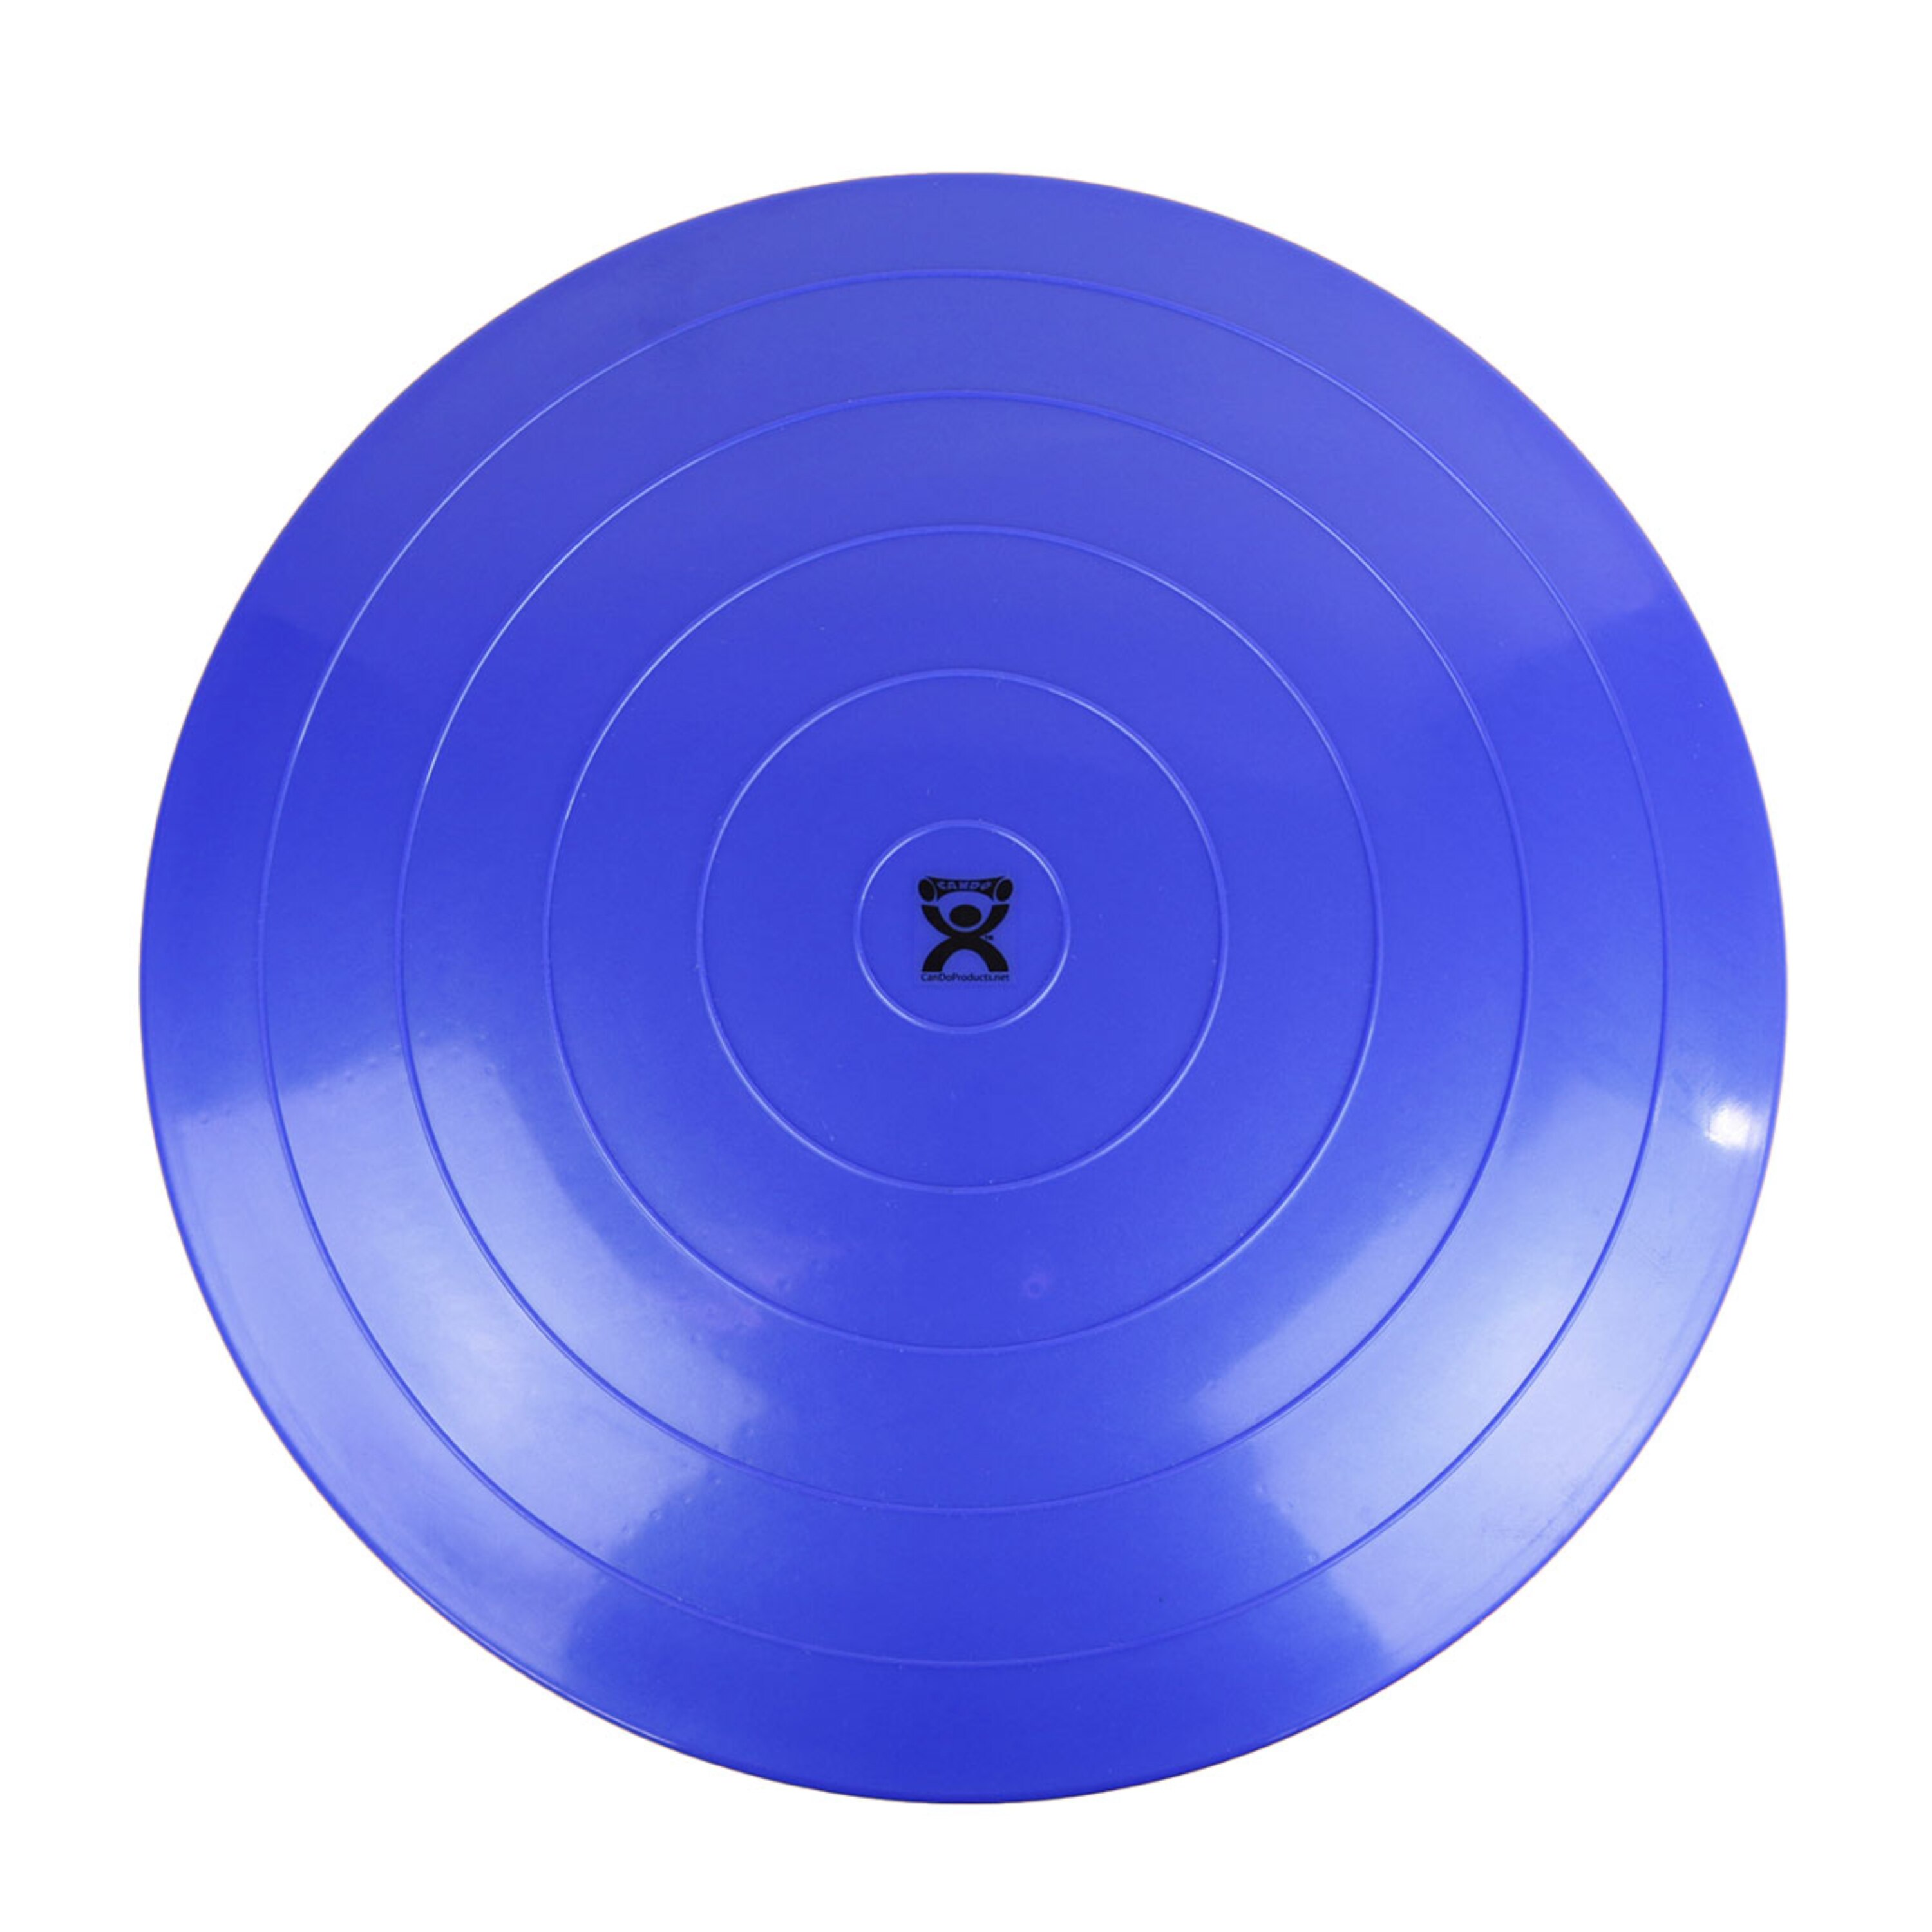 Fabrication Enterprises CanDo Balance Disc, 24 Diameter, Blue , CVS